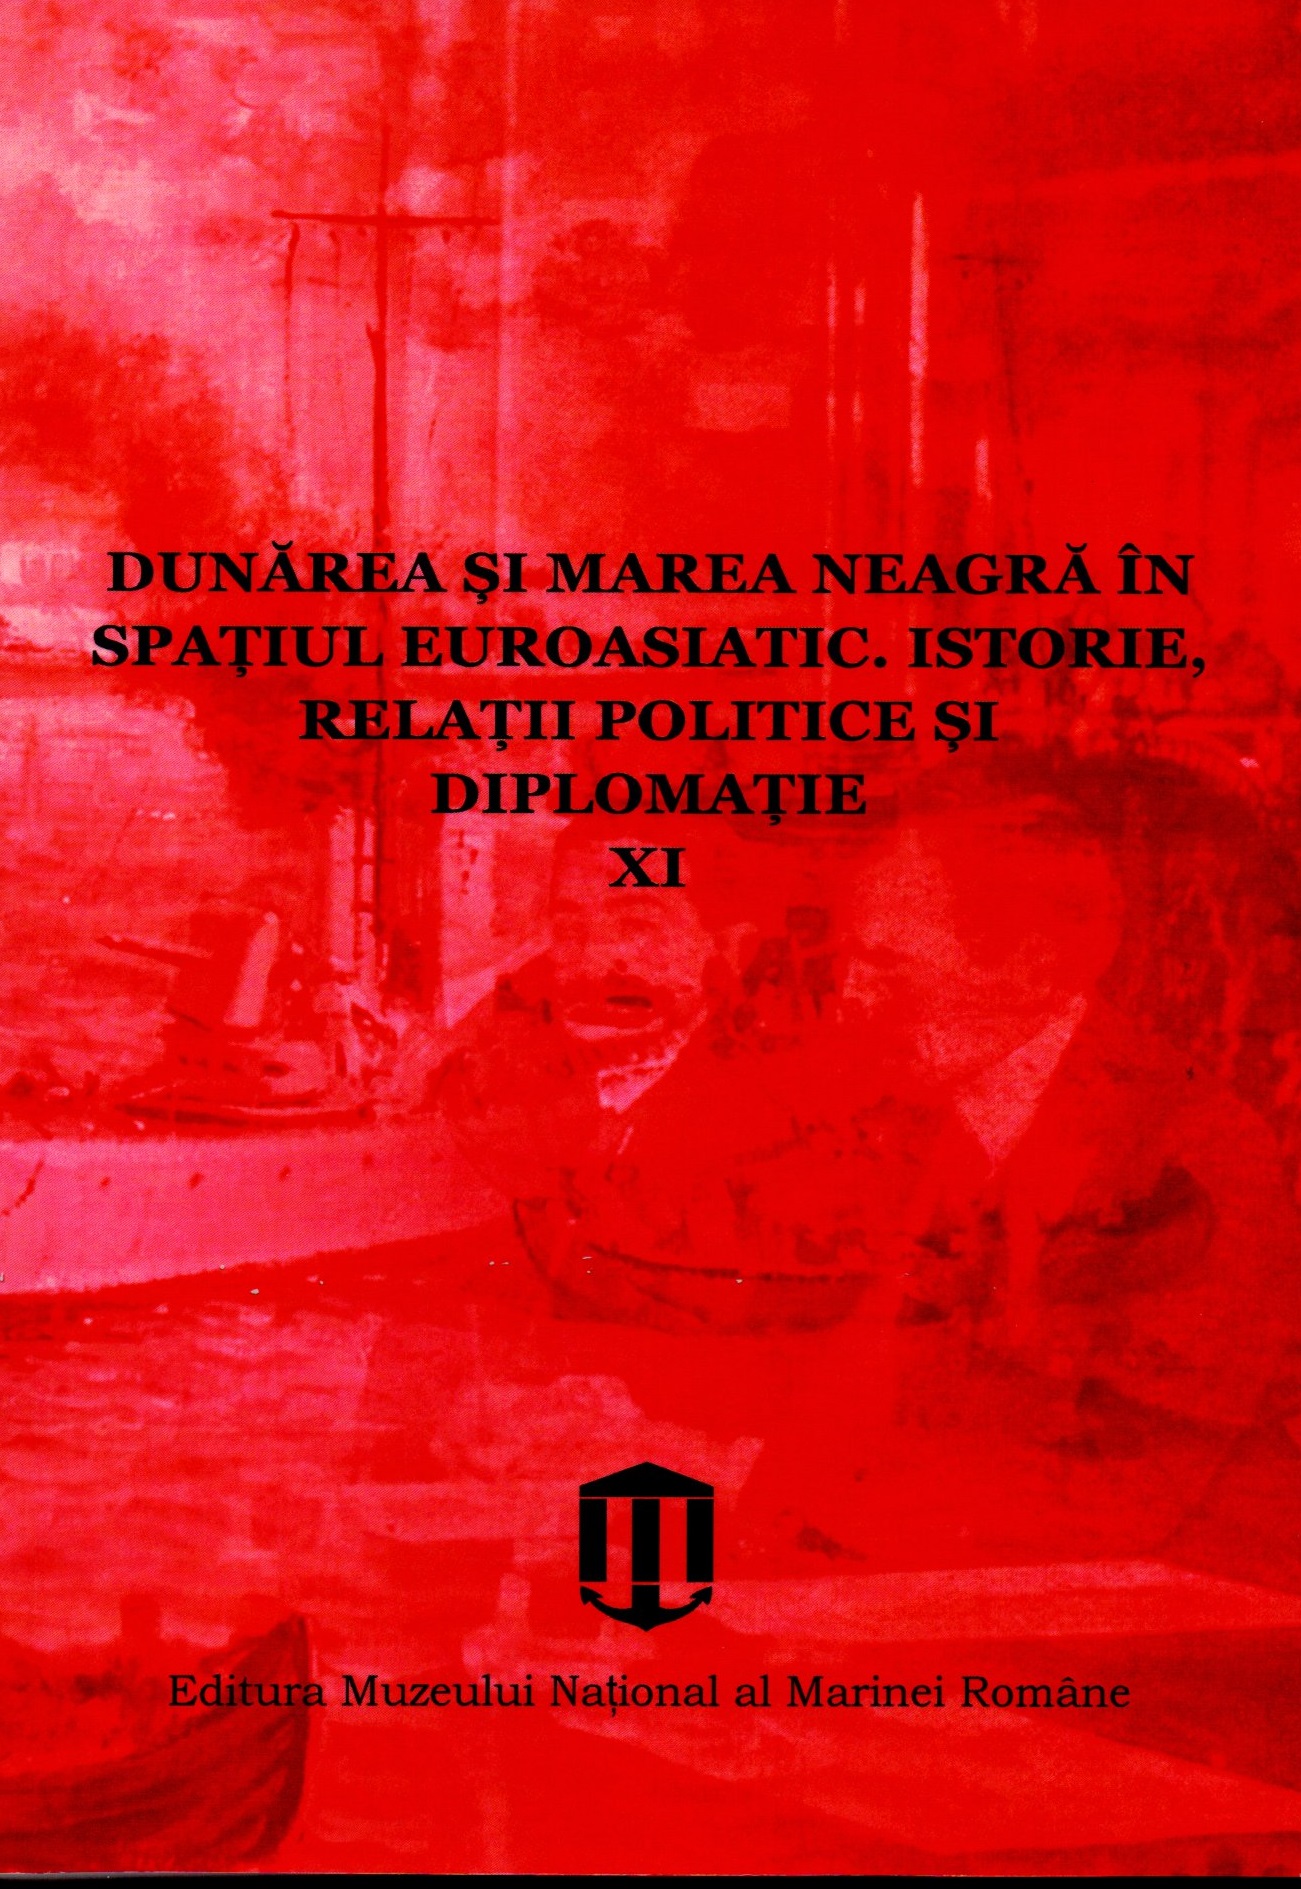 S.O.E. IN WARTIME ROMANIA. THE CASE OF CĂTĂLIN VLĂDESCU-OLT Cover Image